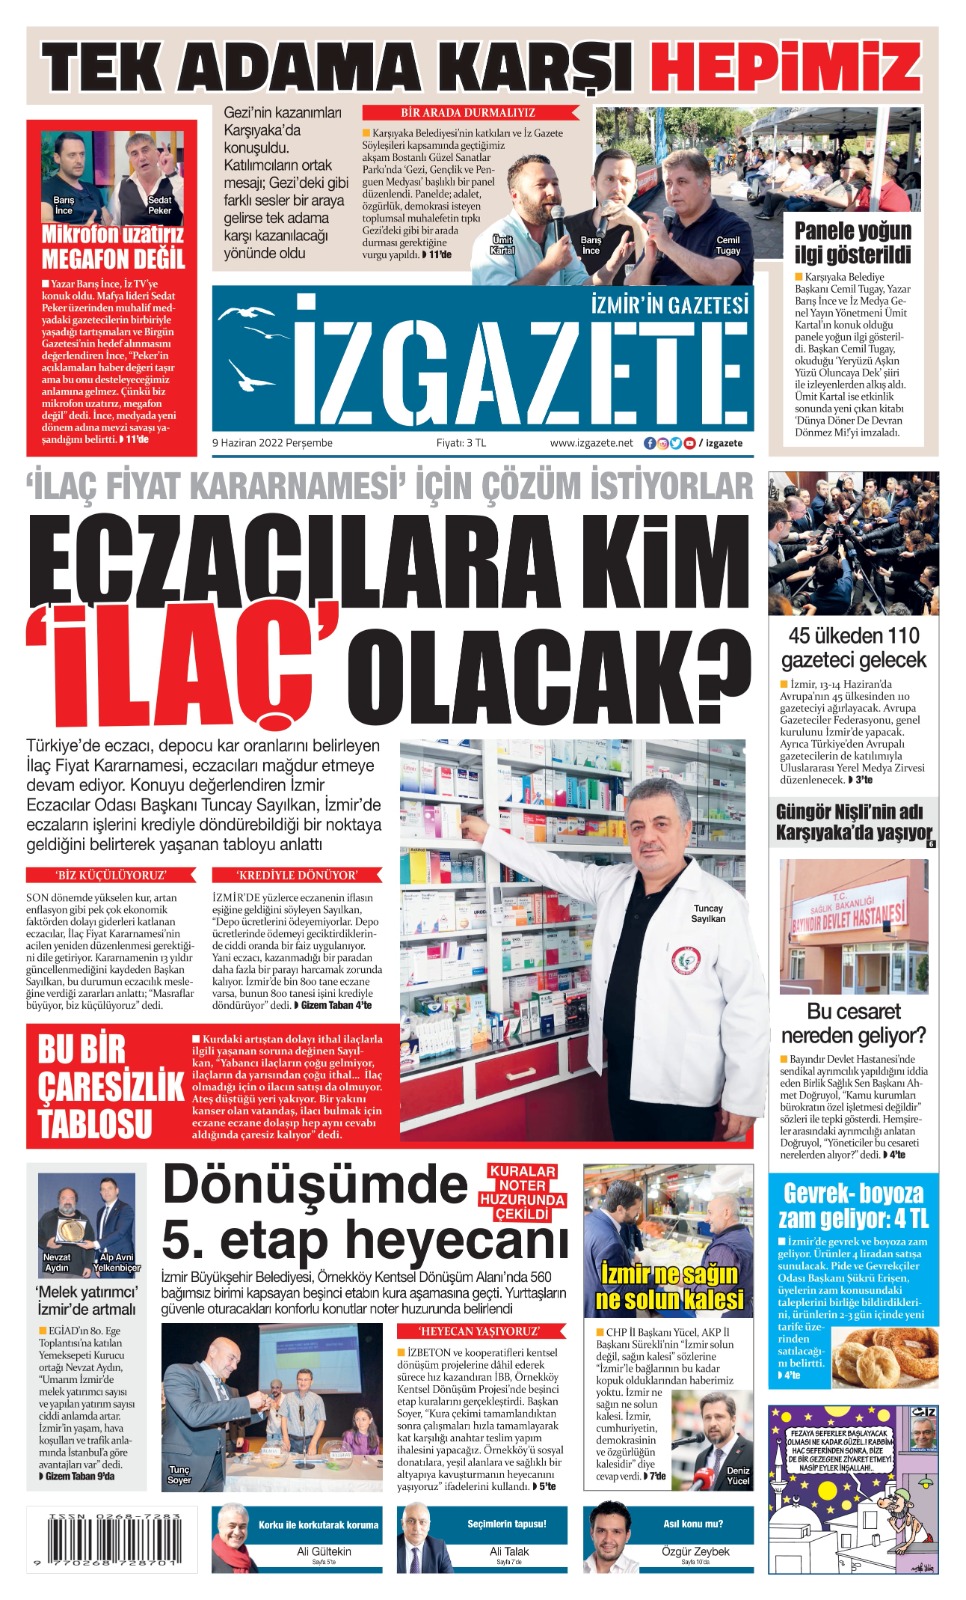 İz Gazete - İzmir'in Gazetesi - 09.06.2022 Manşeti